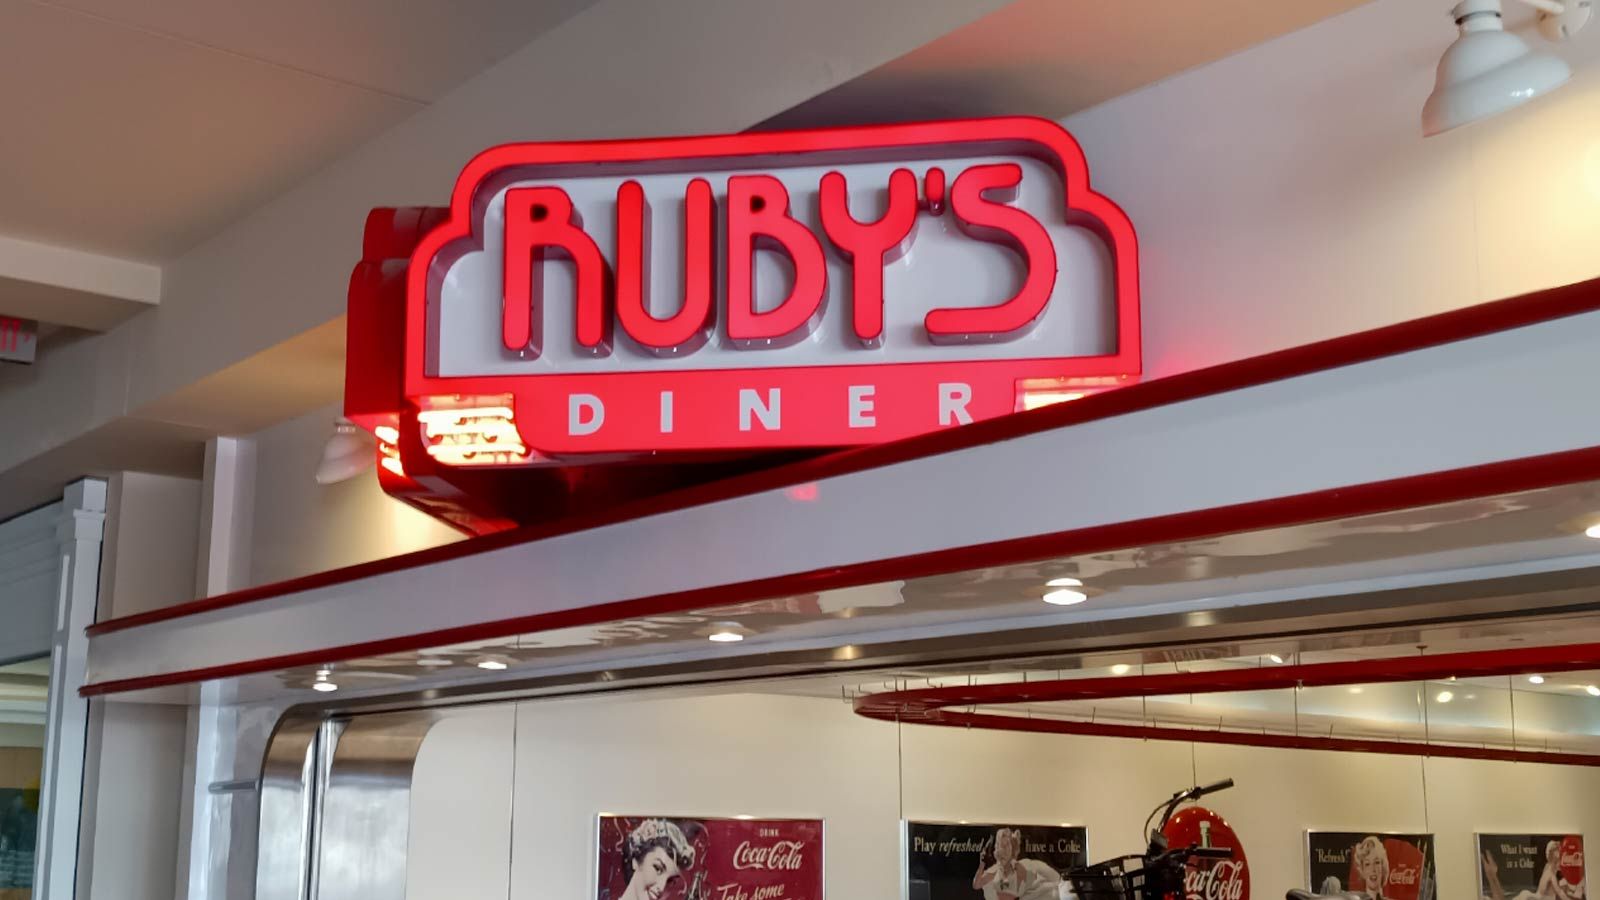 rubys diner indoor illuminated signage